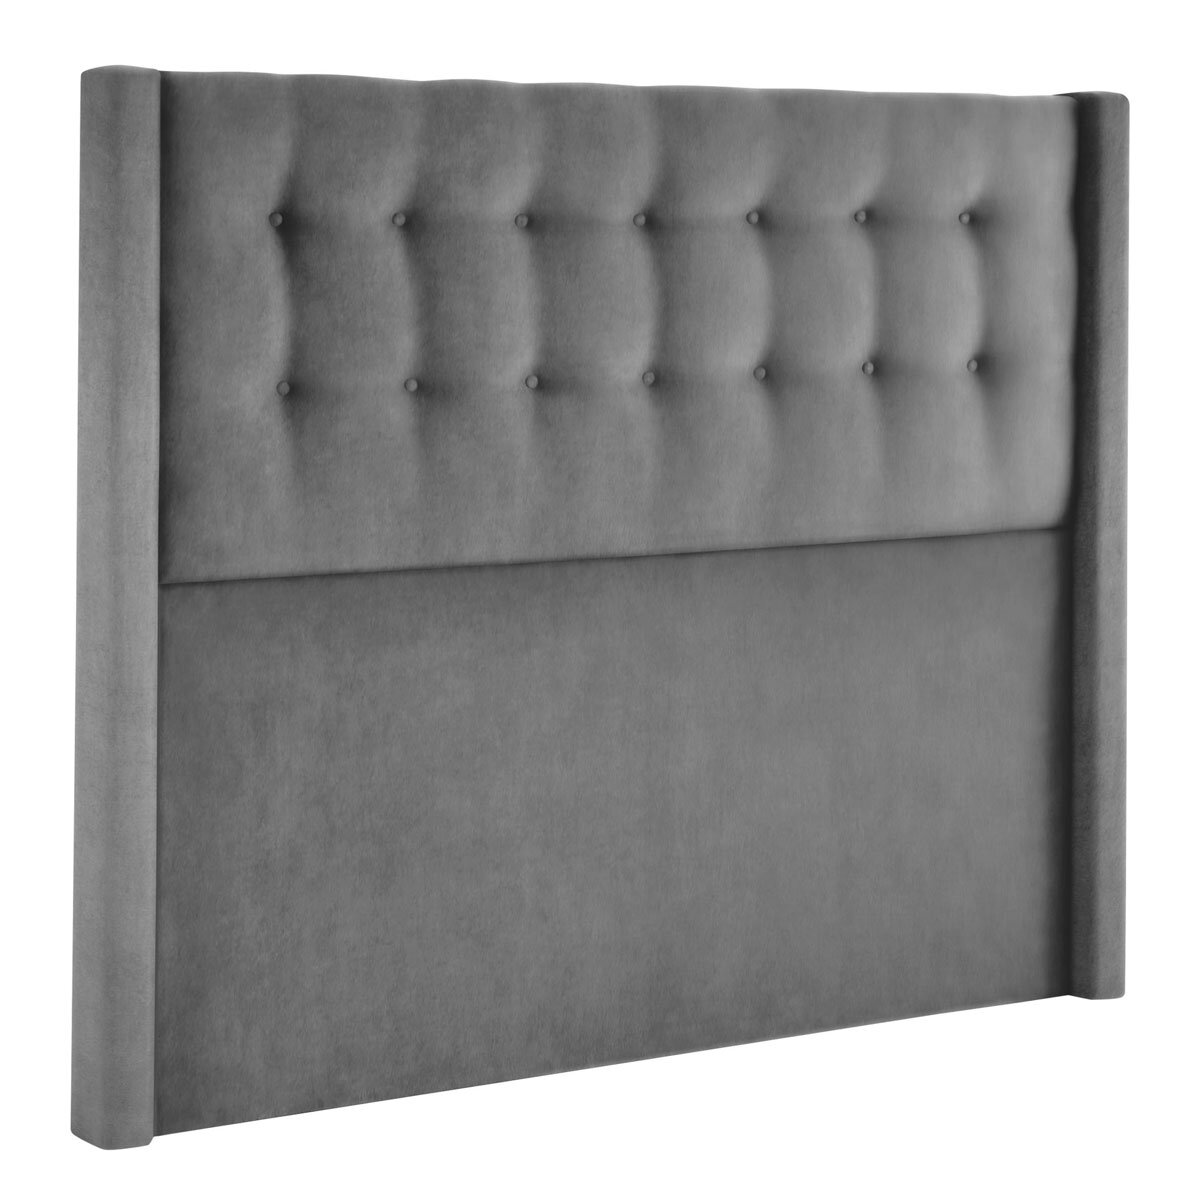 Silentnight 4 drawer velvet divan in charoal grey